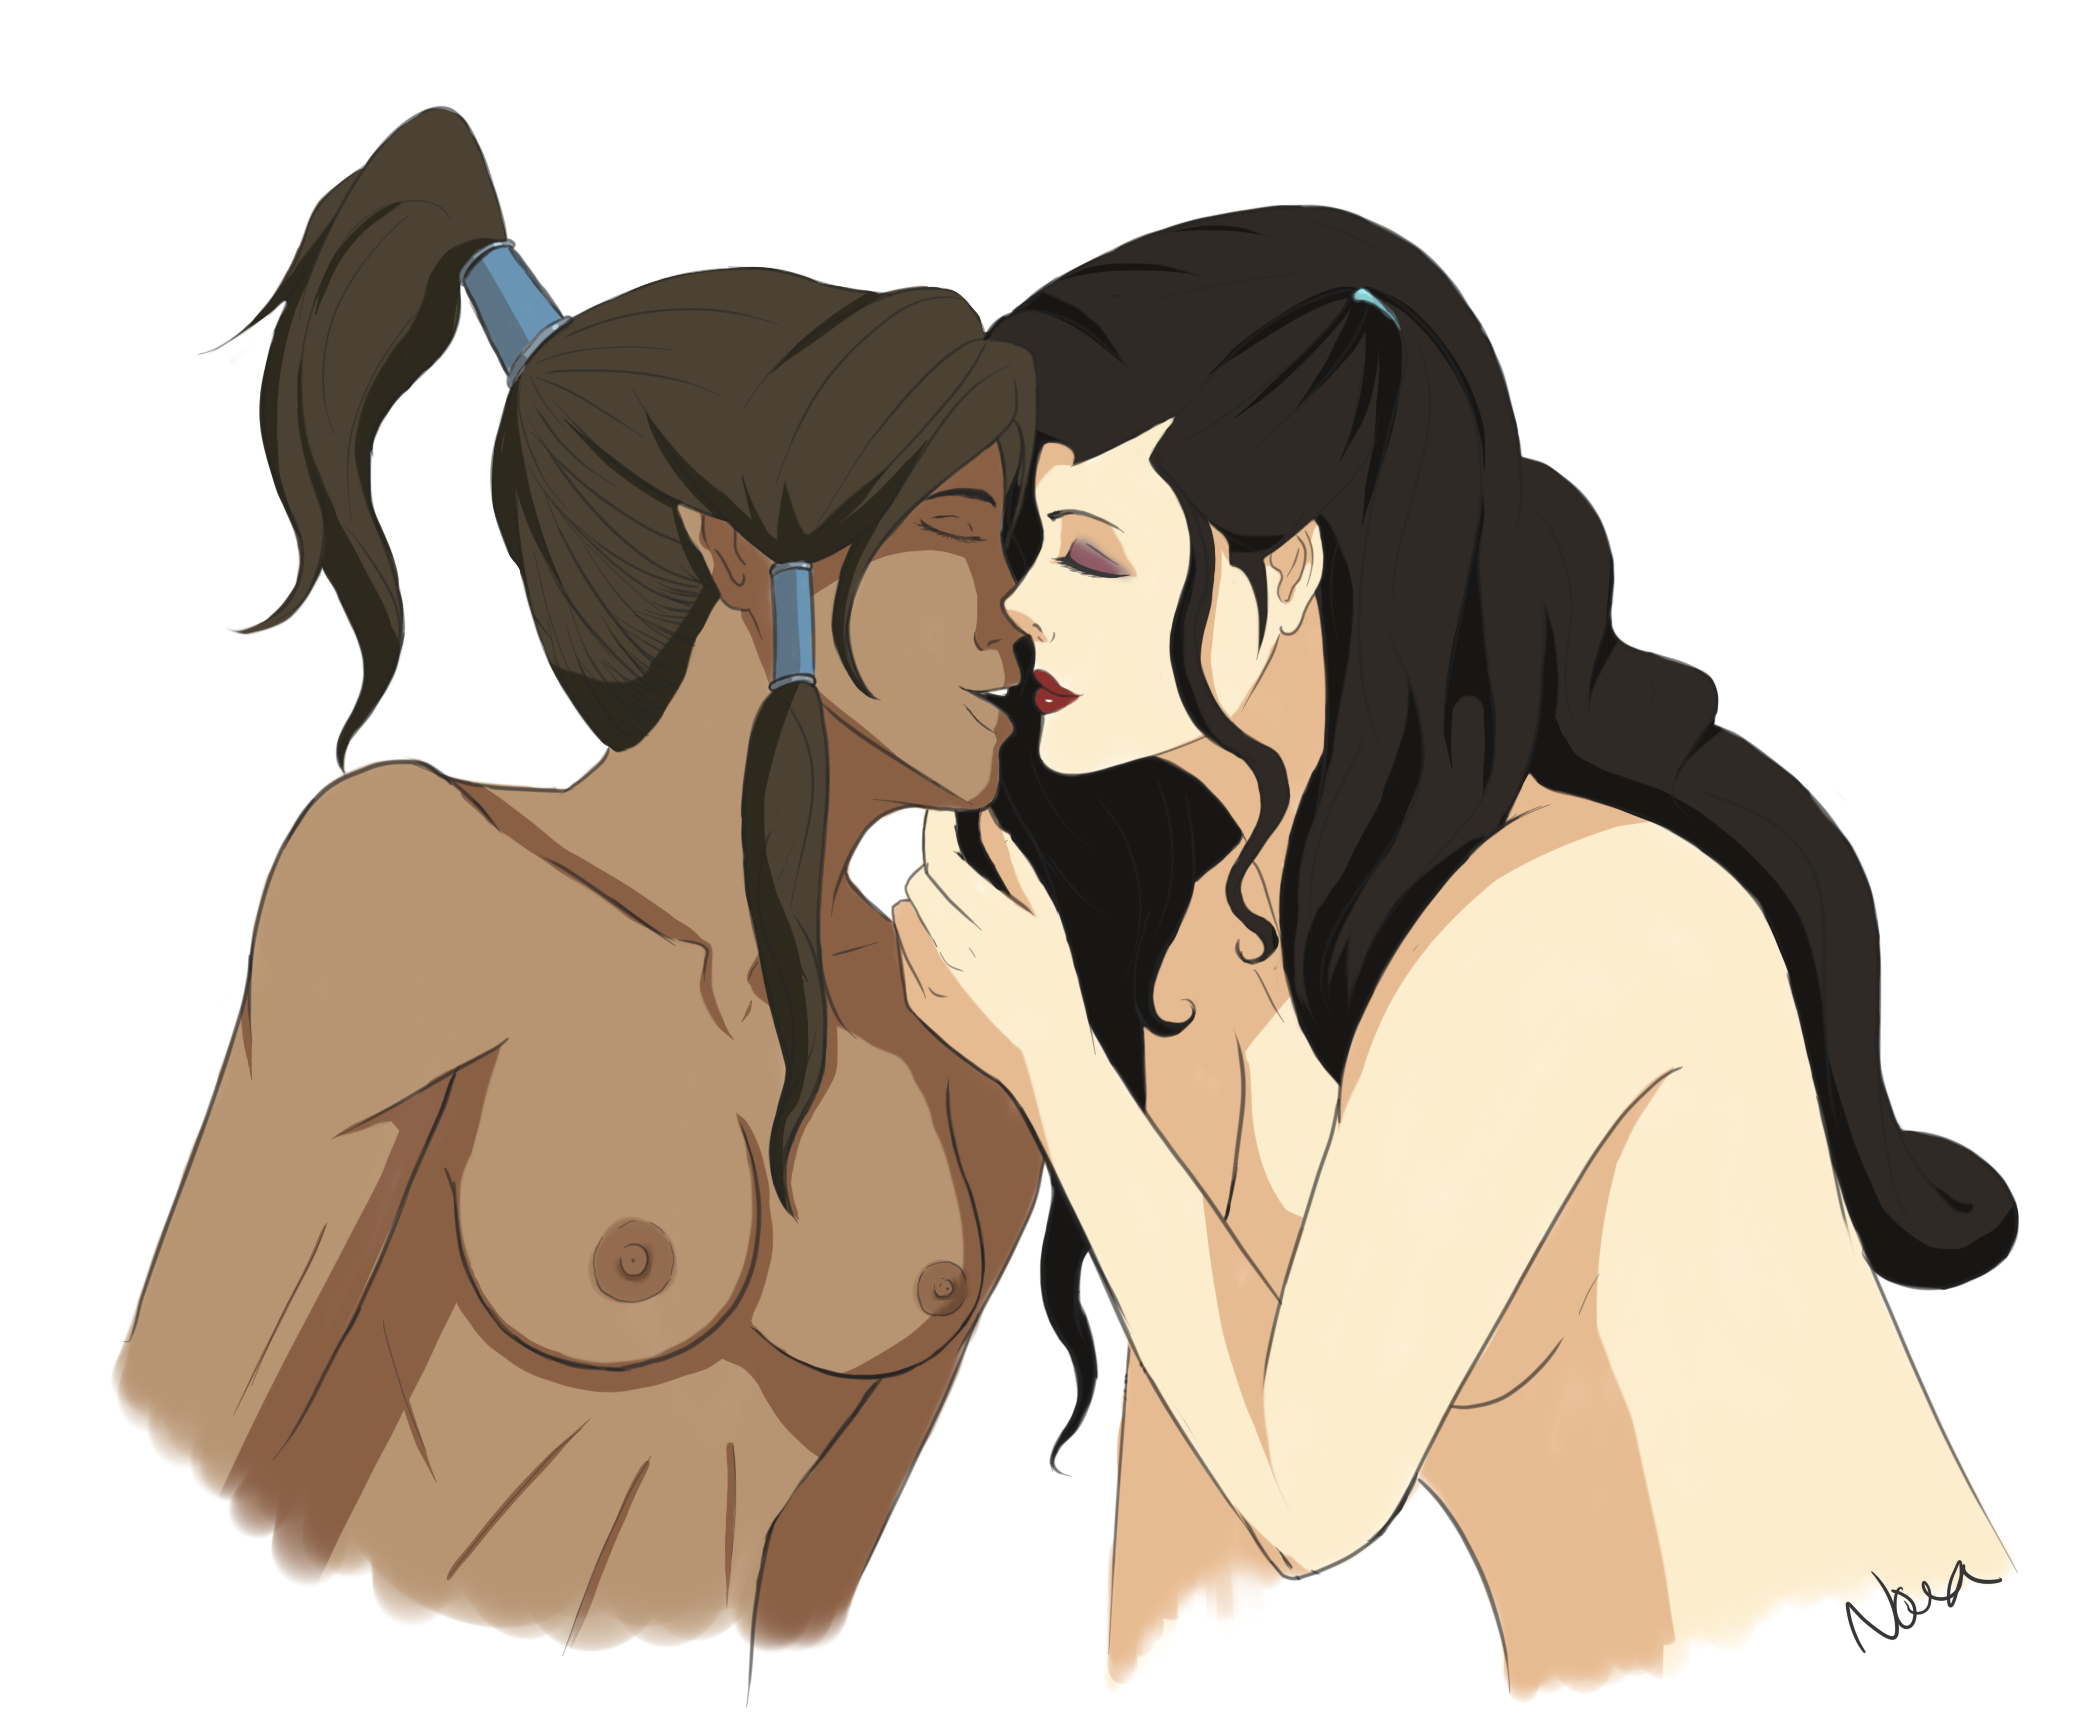 Avatar korra having boobs naked